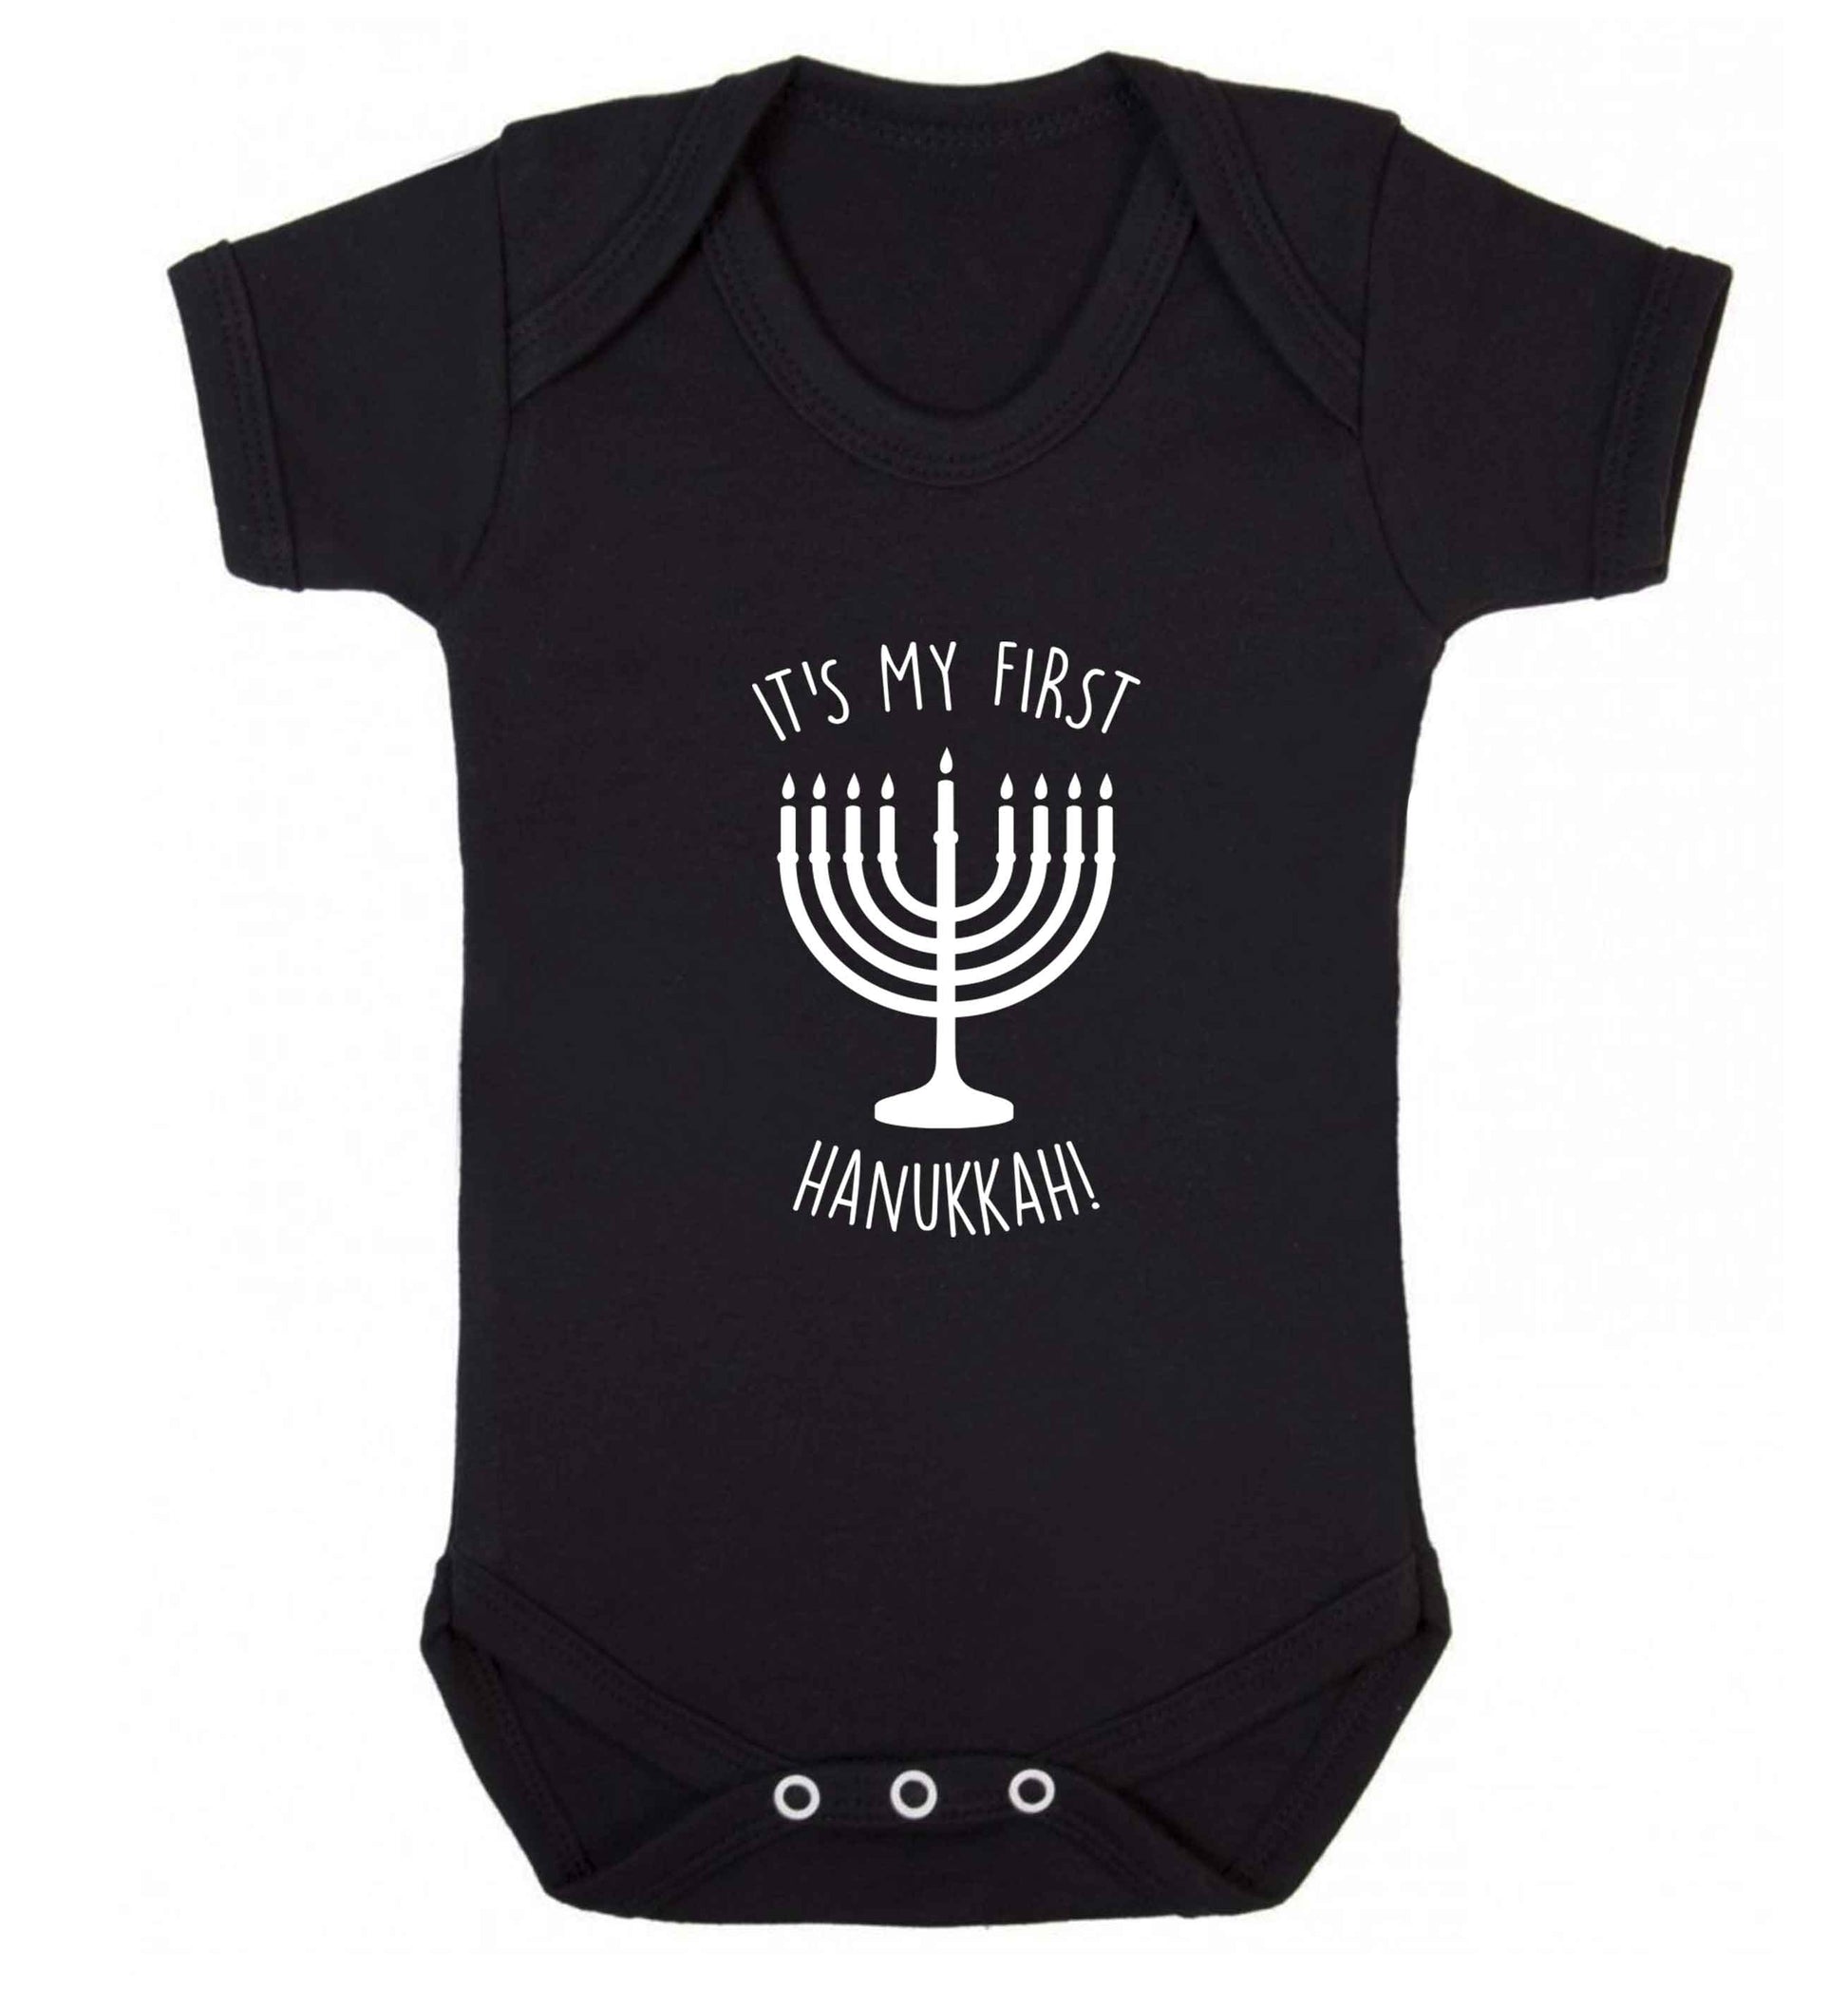 It's my first hanukkah baby vest black 18-24 months